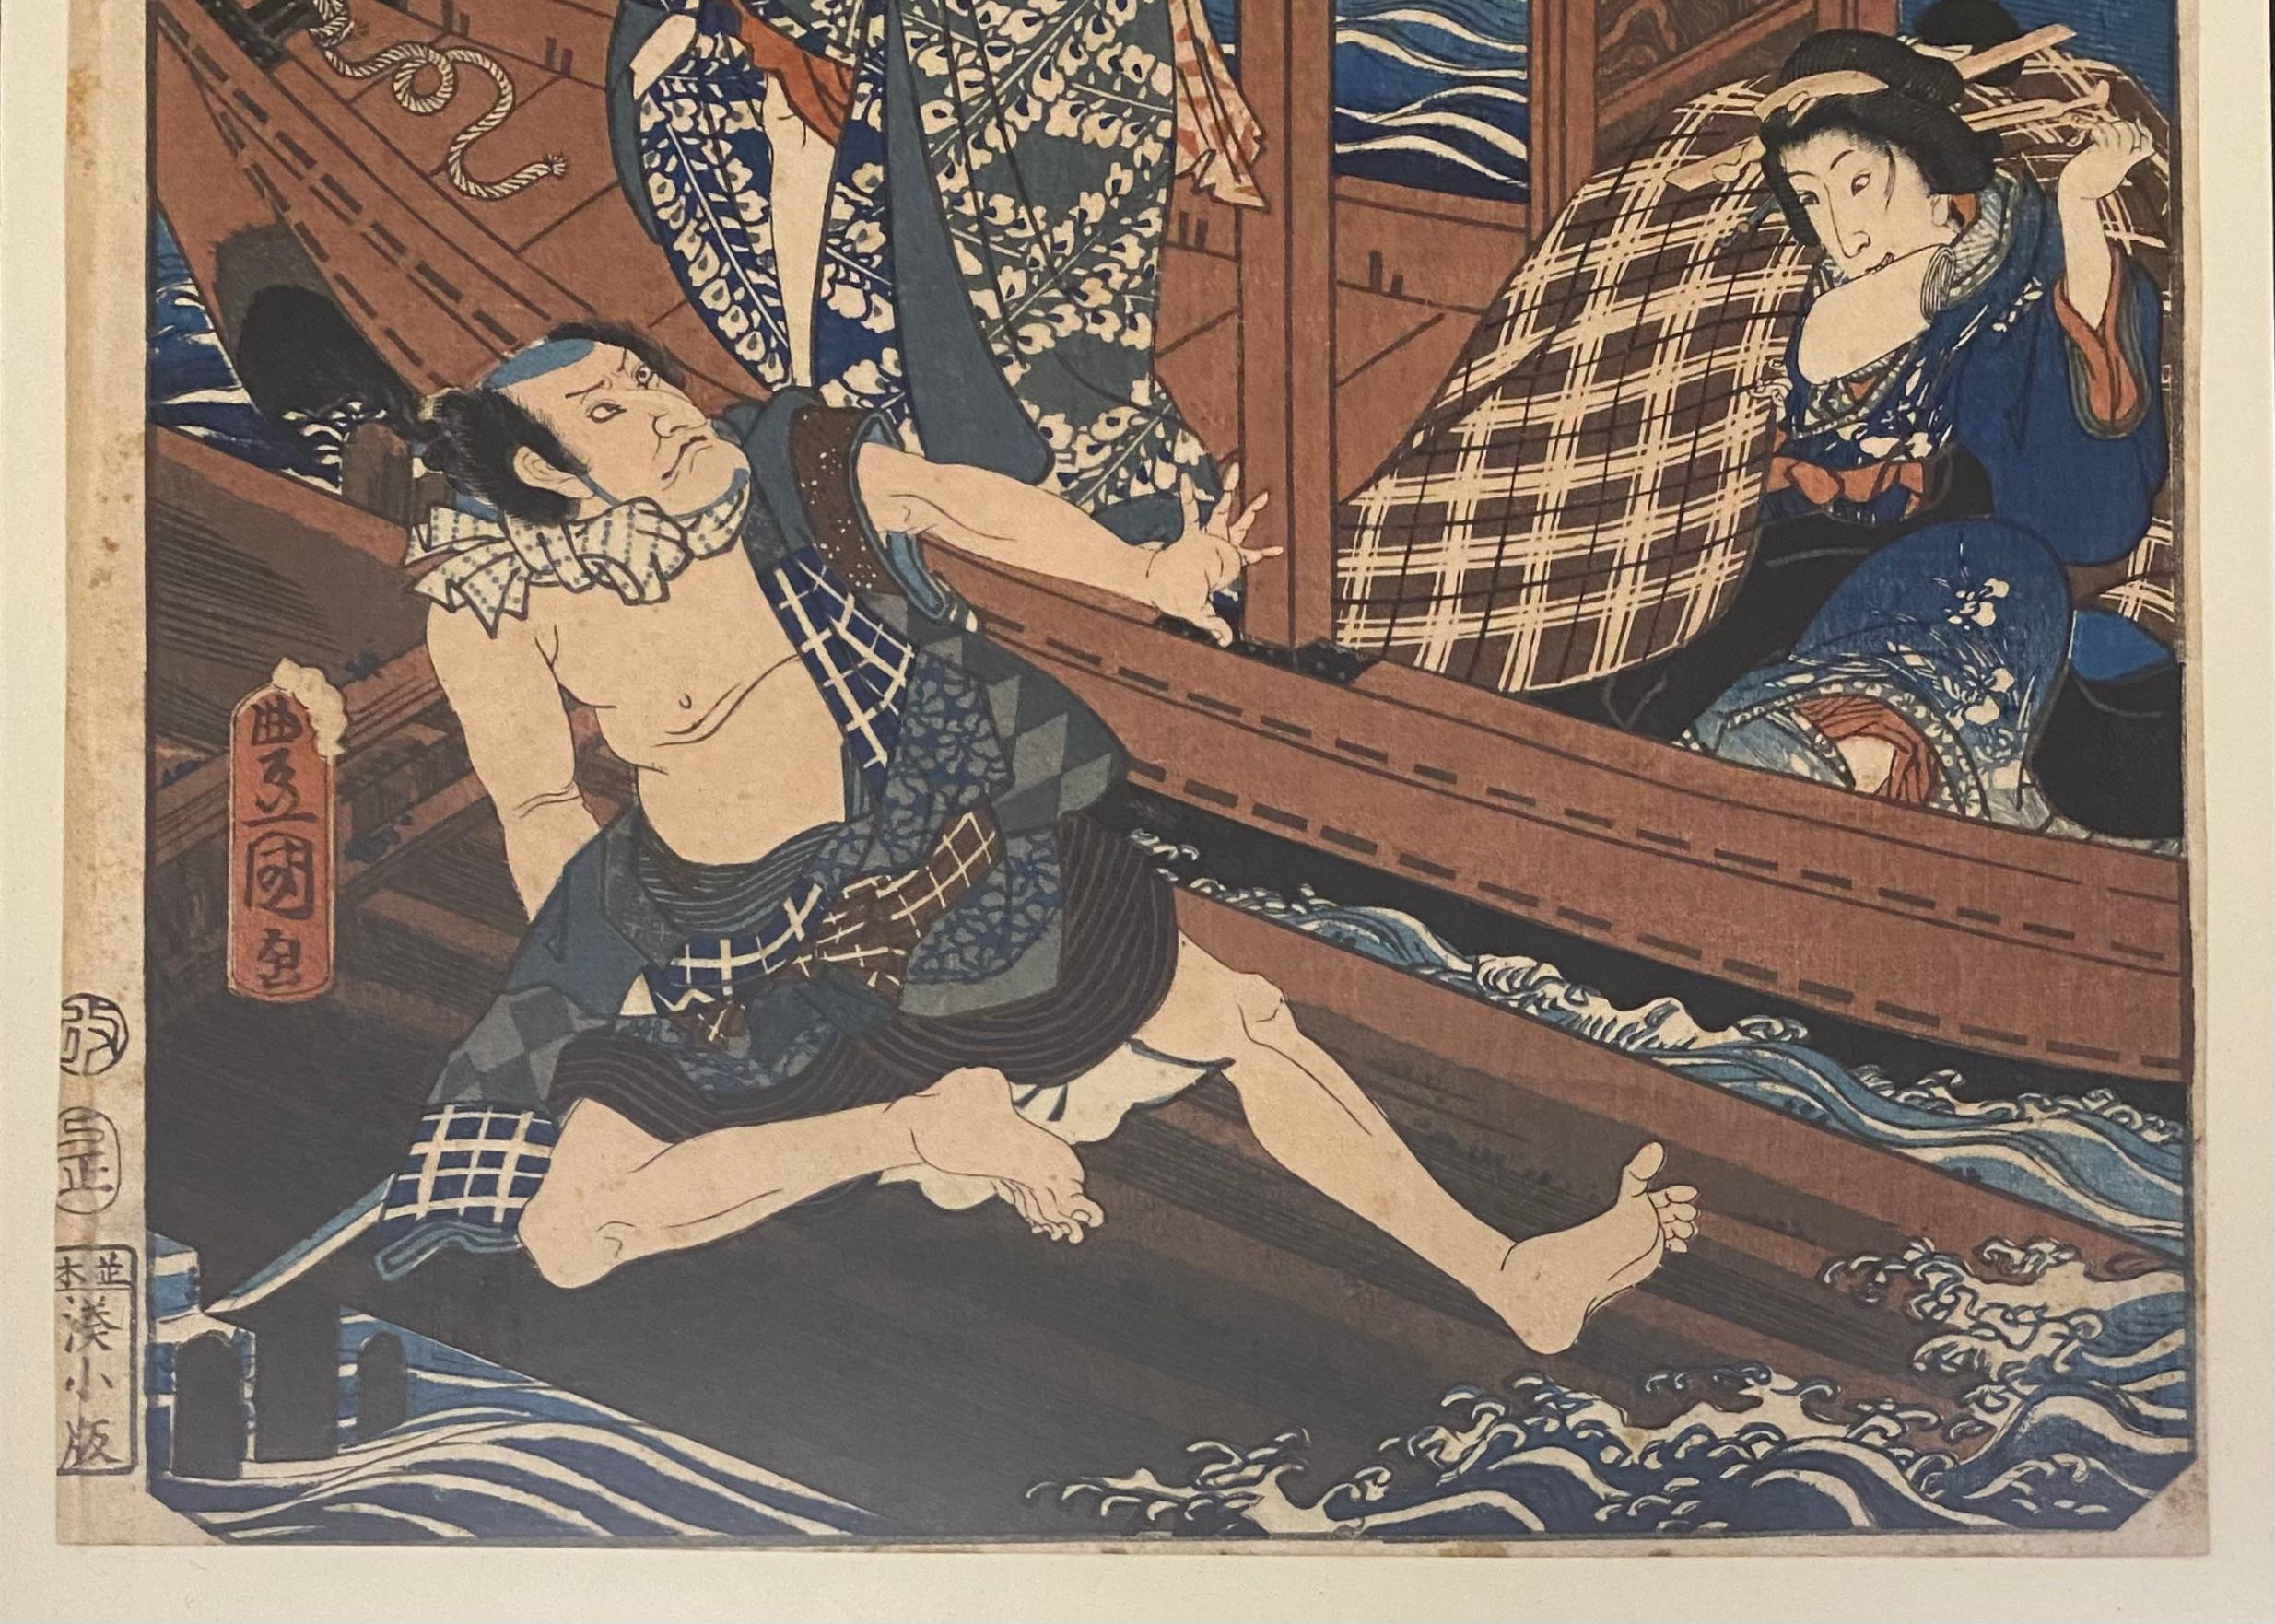 Ein feiner, professionell gerahmter japanischer Original-Holzschnitt, der dem Meister Utagawa Kunisada (1786 - 1865), auch bekannt als Utagawa Toyokuni III, zugeschrieben wird; Tinte und Farbe auf Papier.
Edo-Periode, ca. 1859.

Dies ist ein